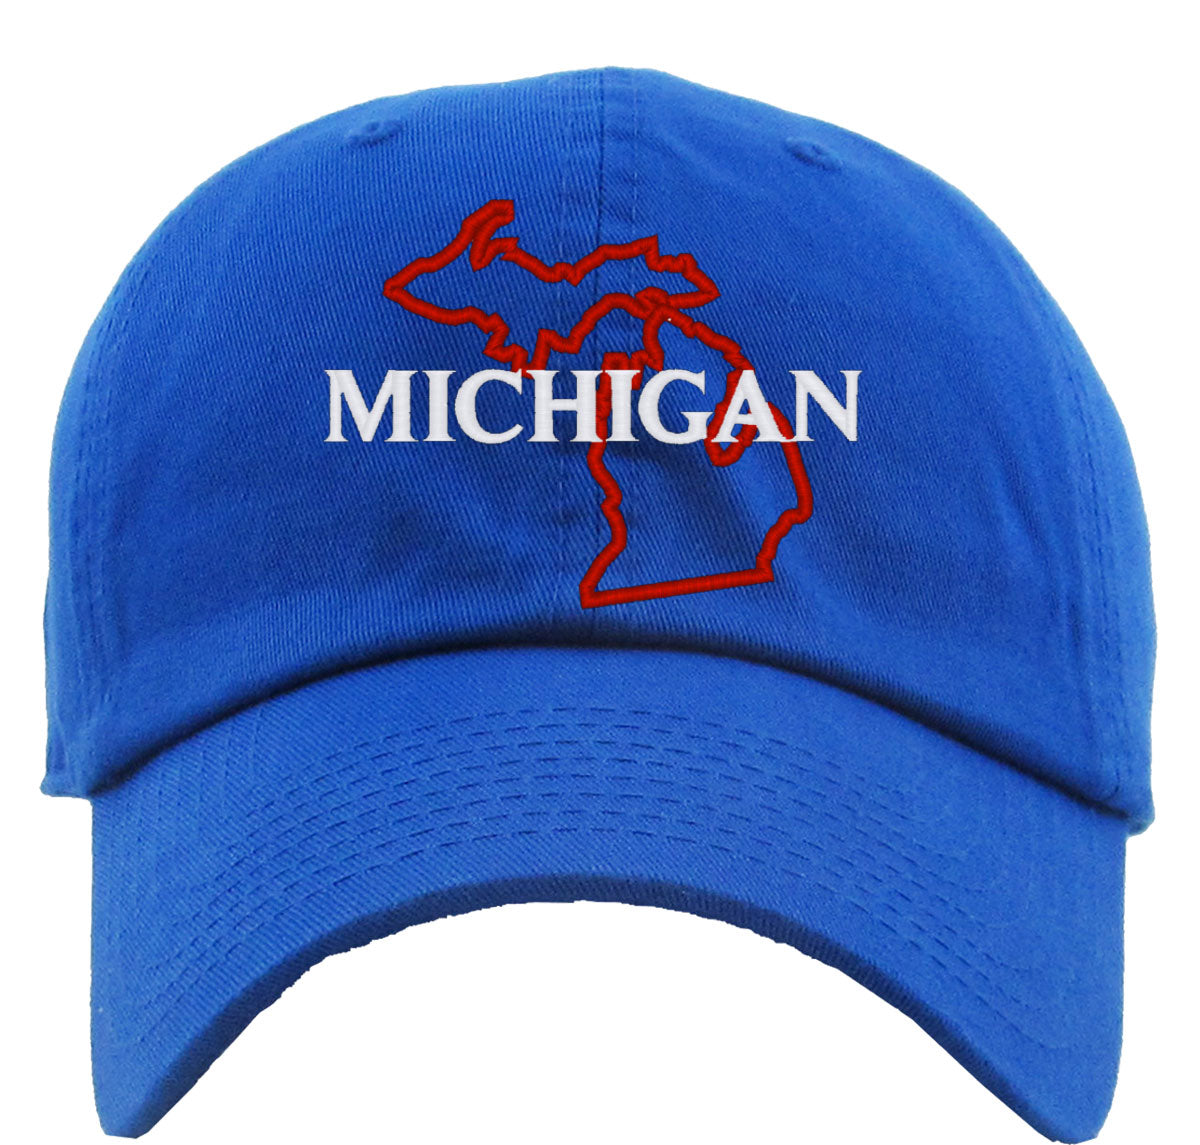 Michigan Premium Baseball Cap